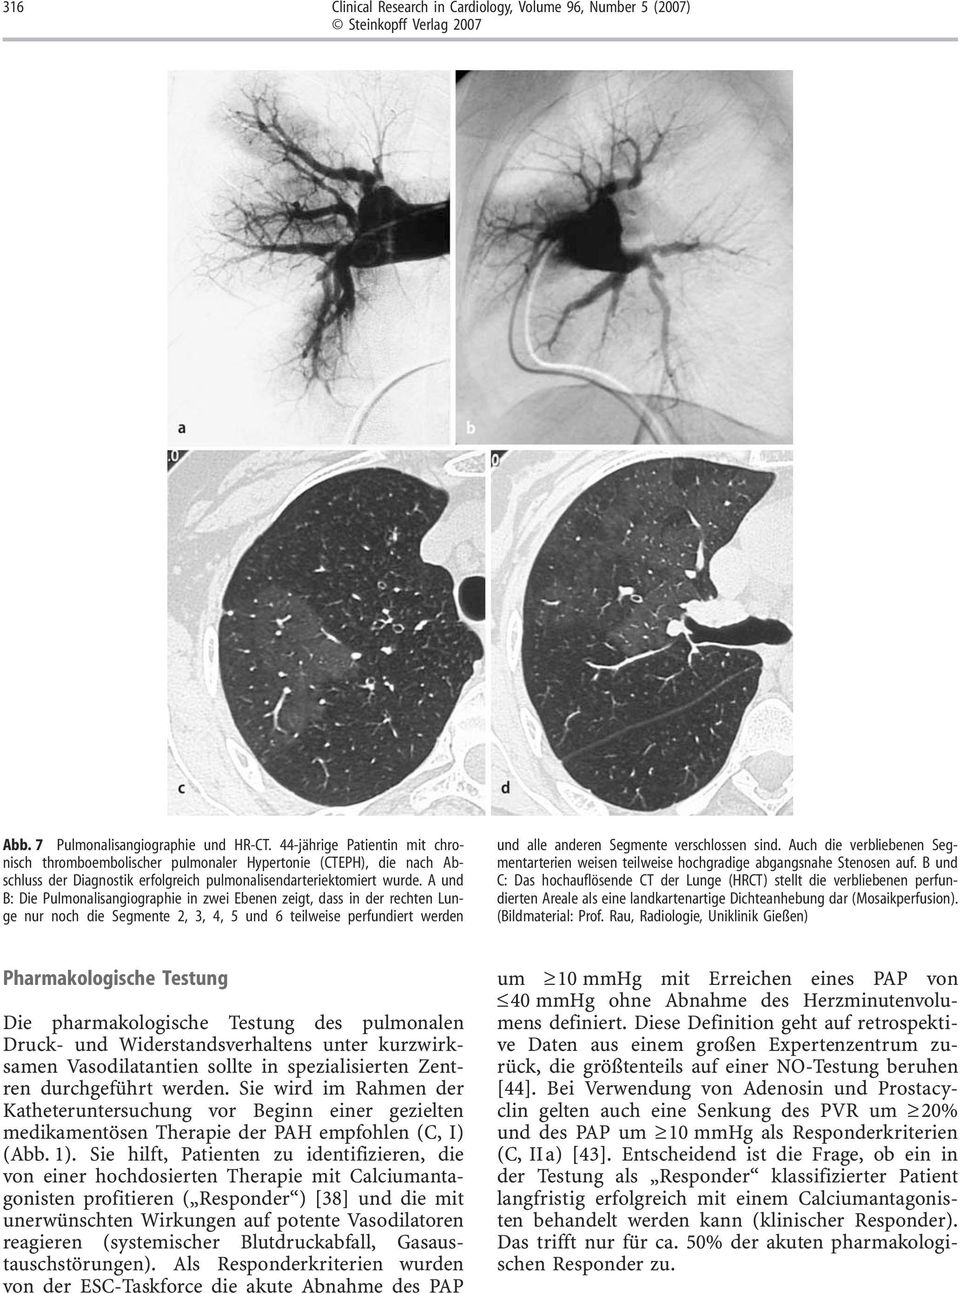 A und B: Die Pulmonalisangiographie in zwei Ebenen zeigt, dass in der rechten Lunge nur noch die Segmente 2, 3, 4, 5 und 6 teilweise perfundiert werden und alle anderen Segmente verschlossen sind.